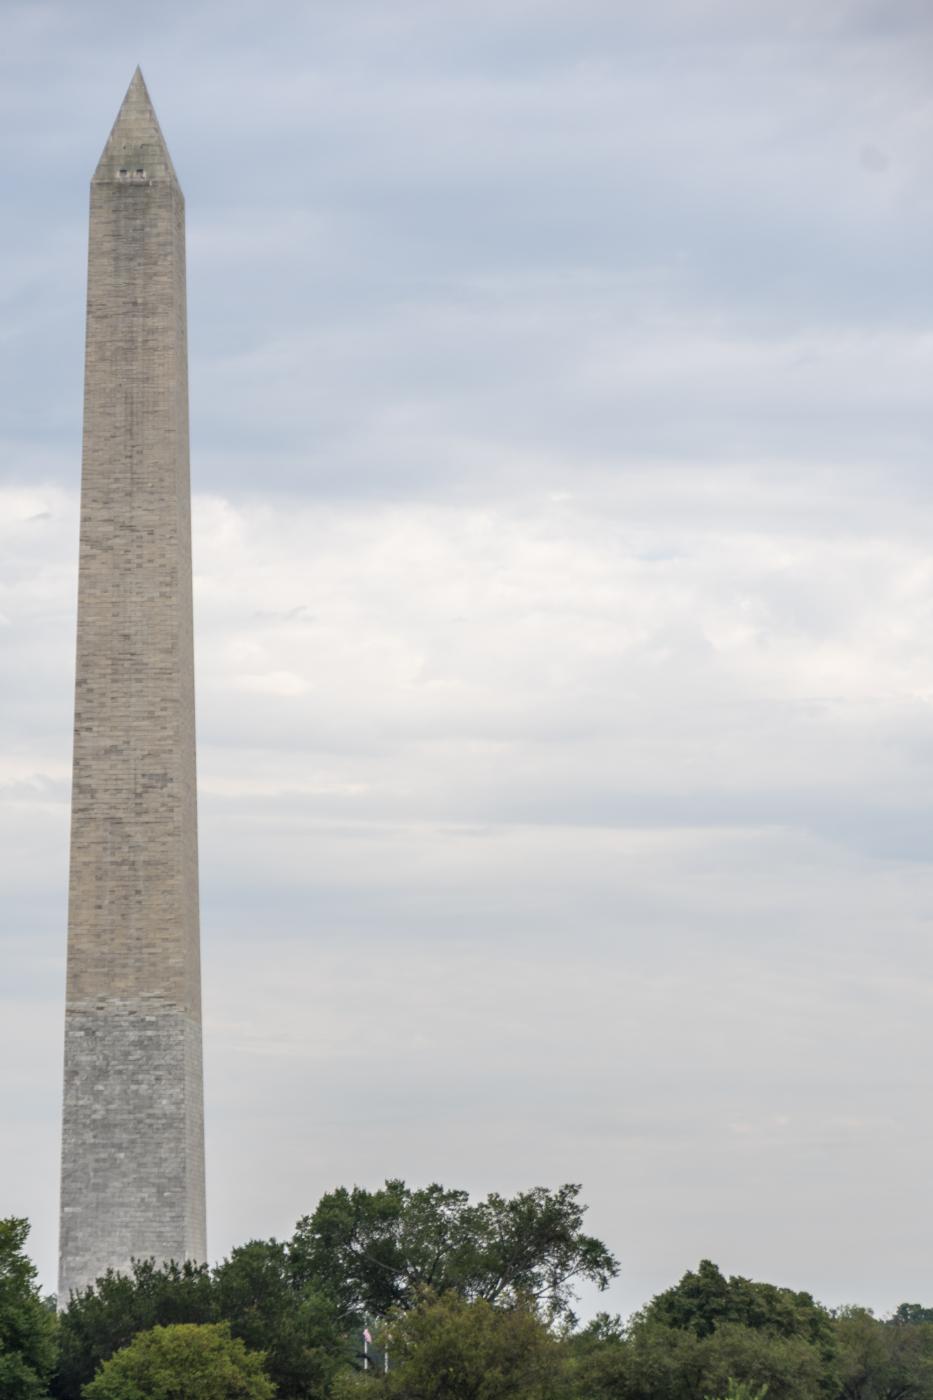 Washington Monument | Buy this image